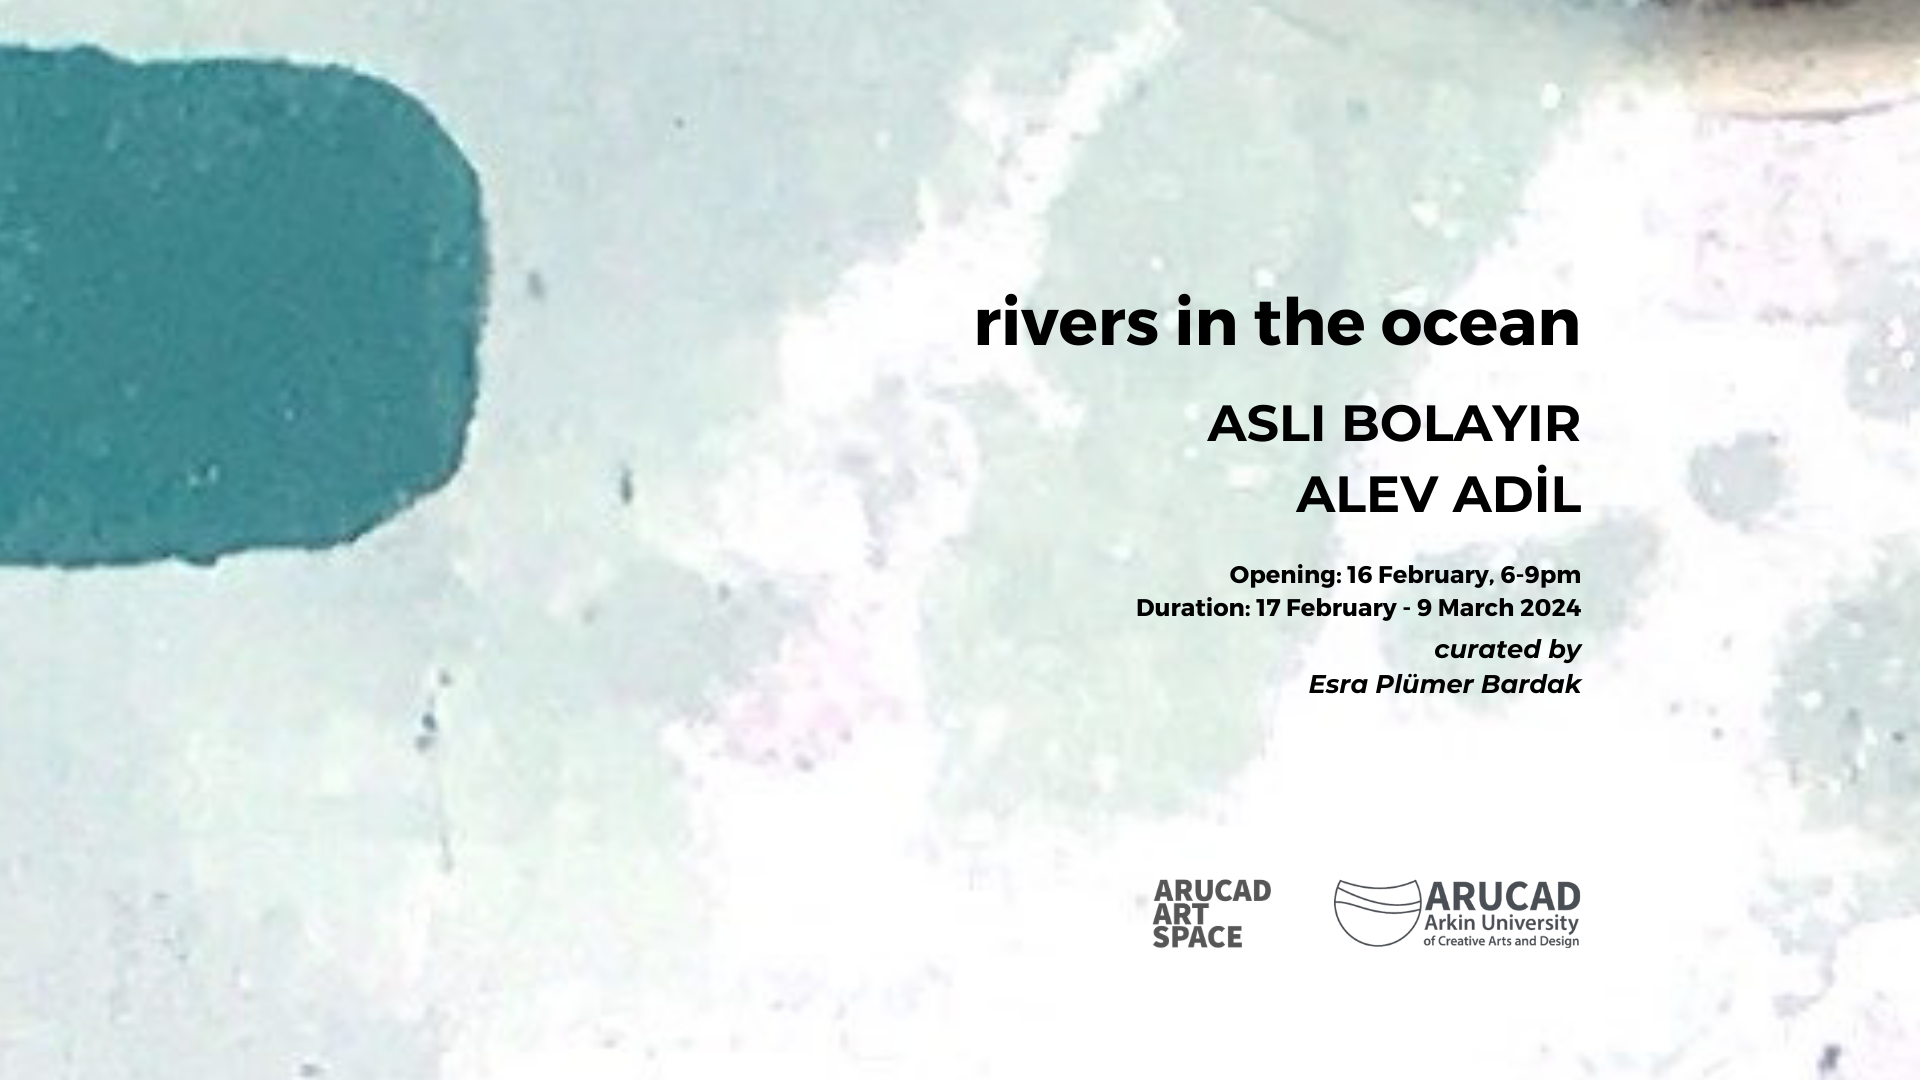 ‘RIVERS IN THE OCEAN’ sergisi Arucad Art Space’te izleyici ile buluşuyor